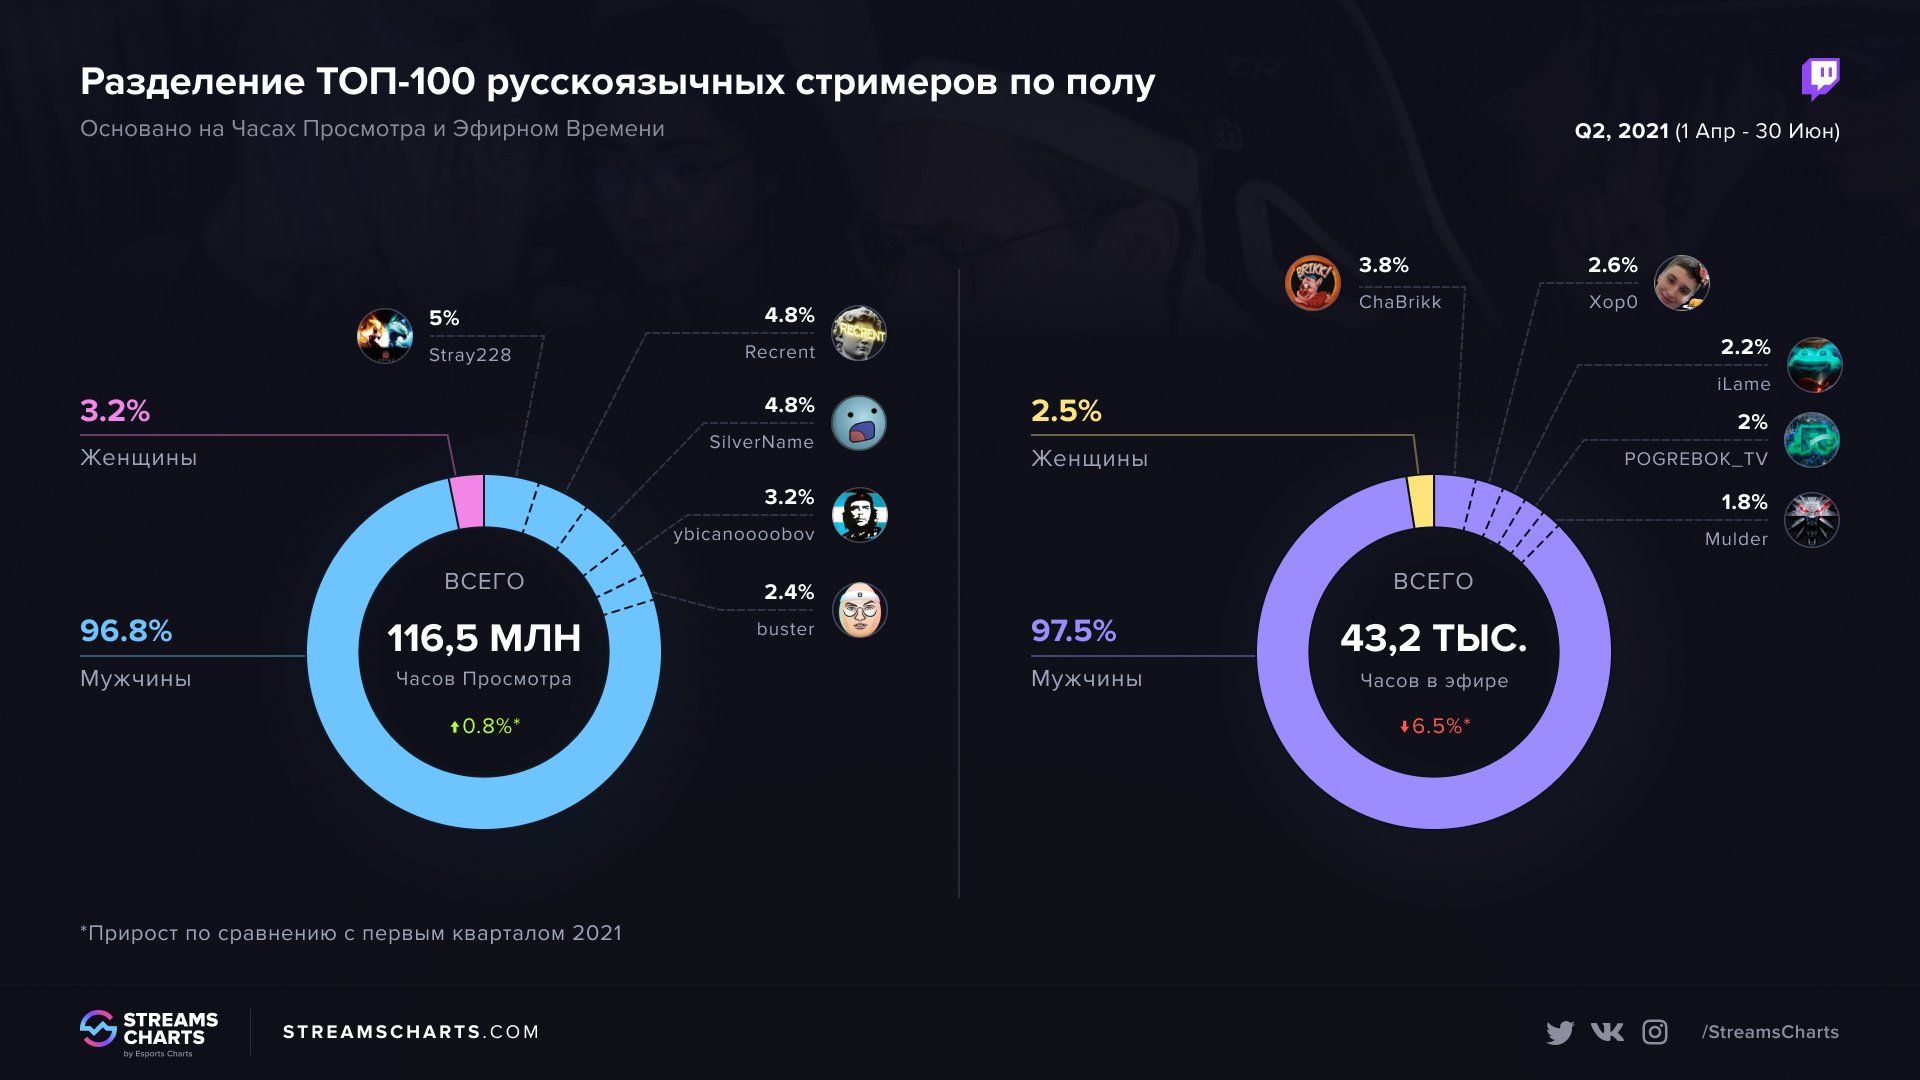 Распределение по полу среди ста популярных русскоязычных стримеров. Источник: Streams Charts